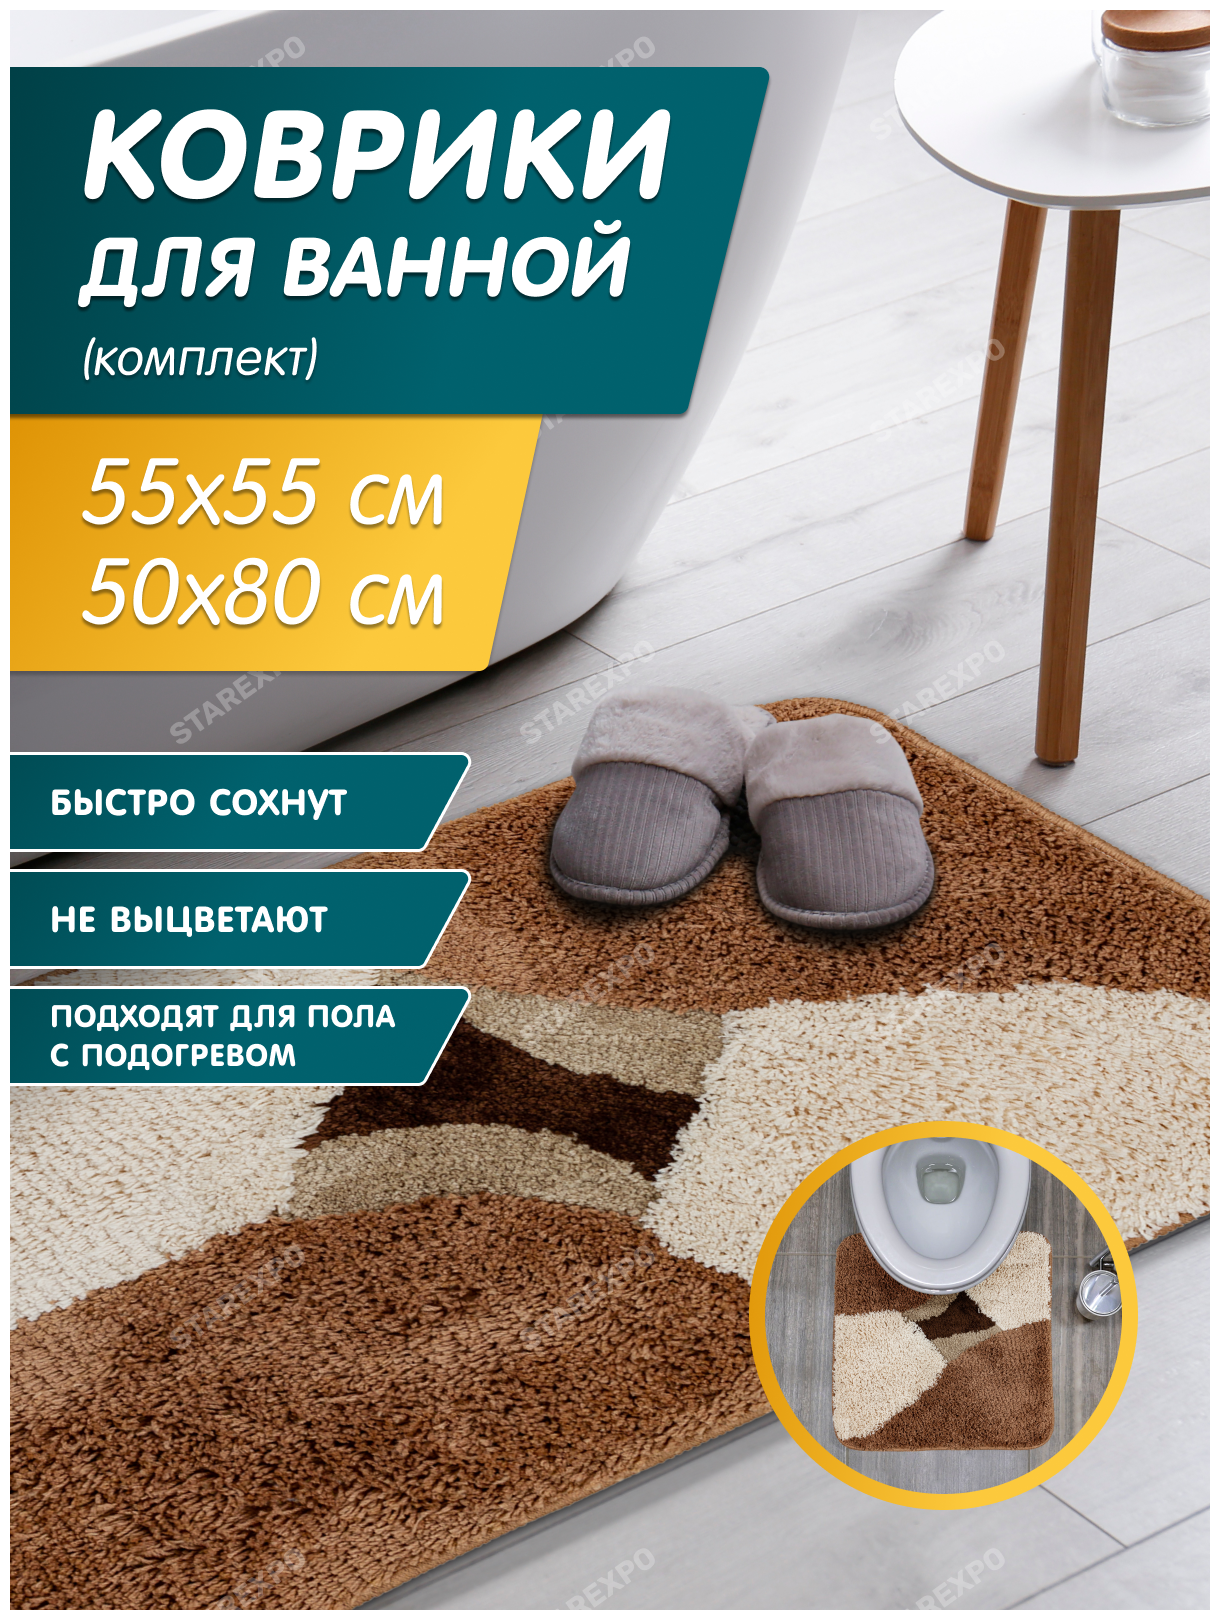 Набор ковриков для ванной комнаты 50х80 см + 55х55 см для туалета цвет коричнево-бежевый